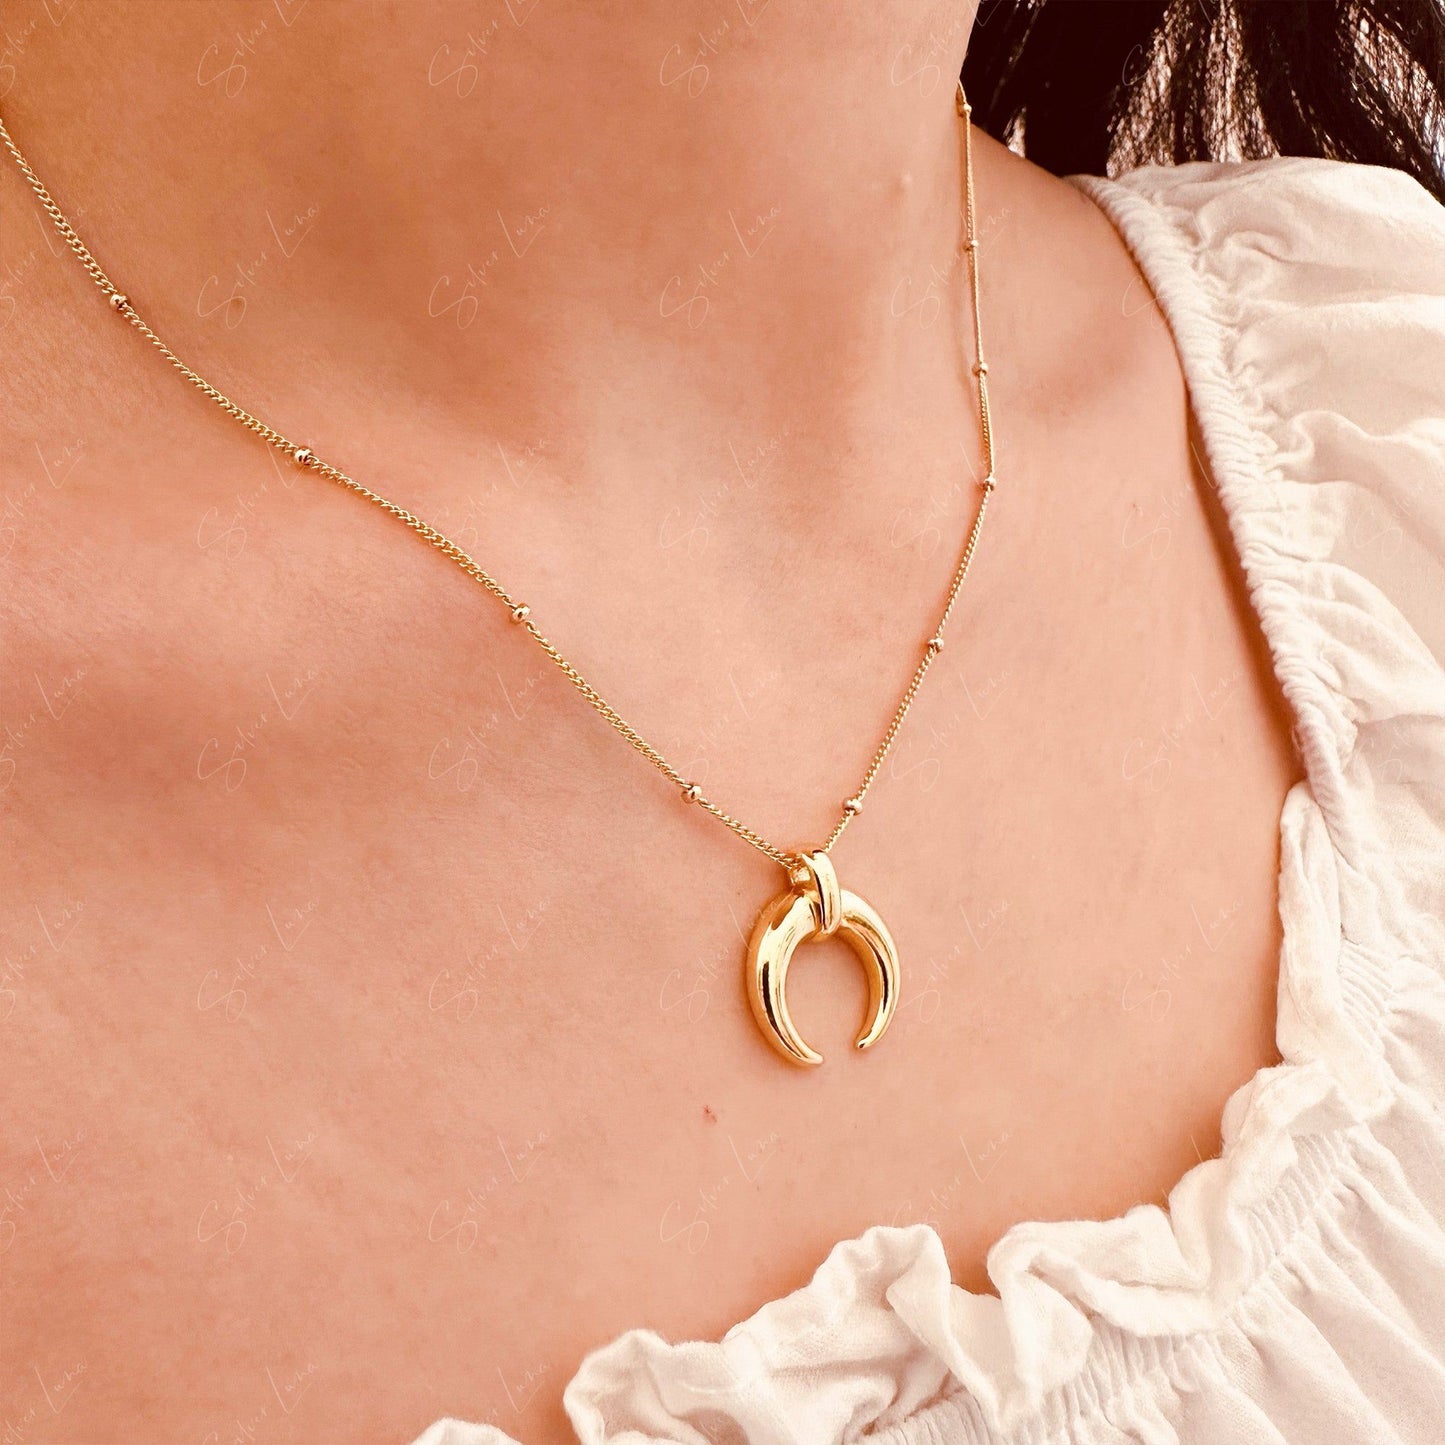 Golden crescent moon pendant necklace